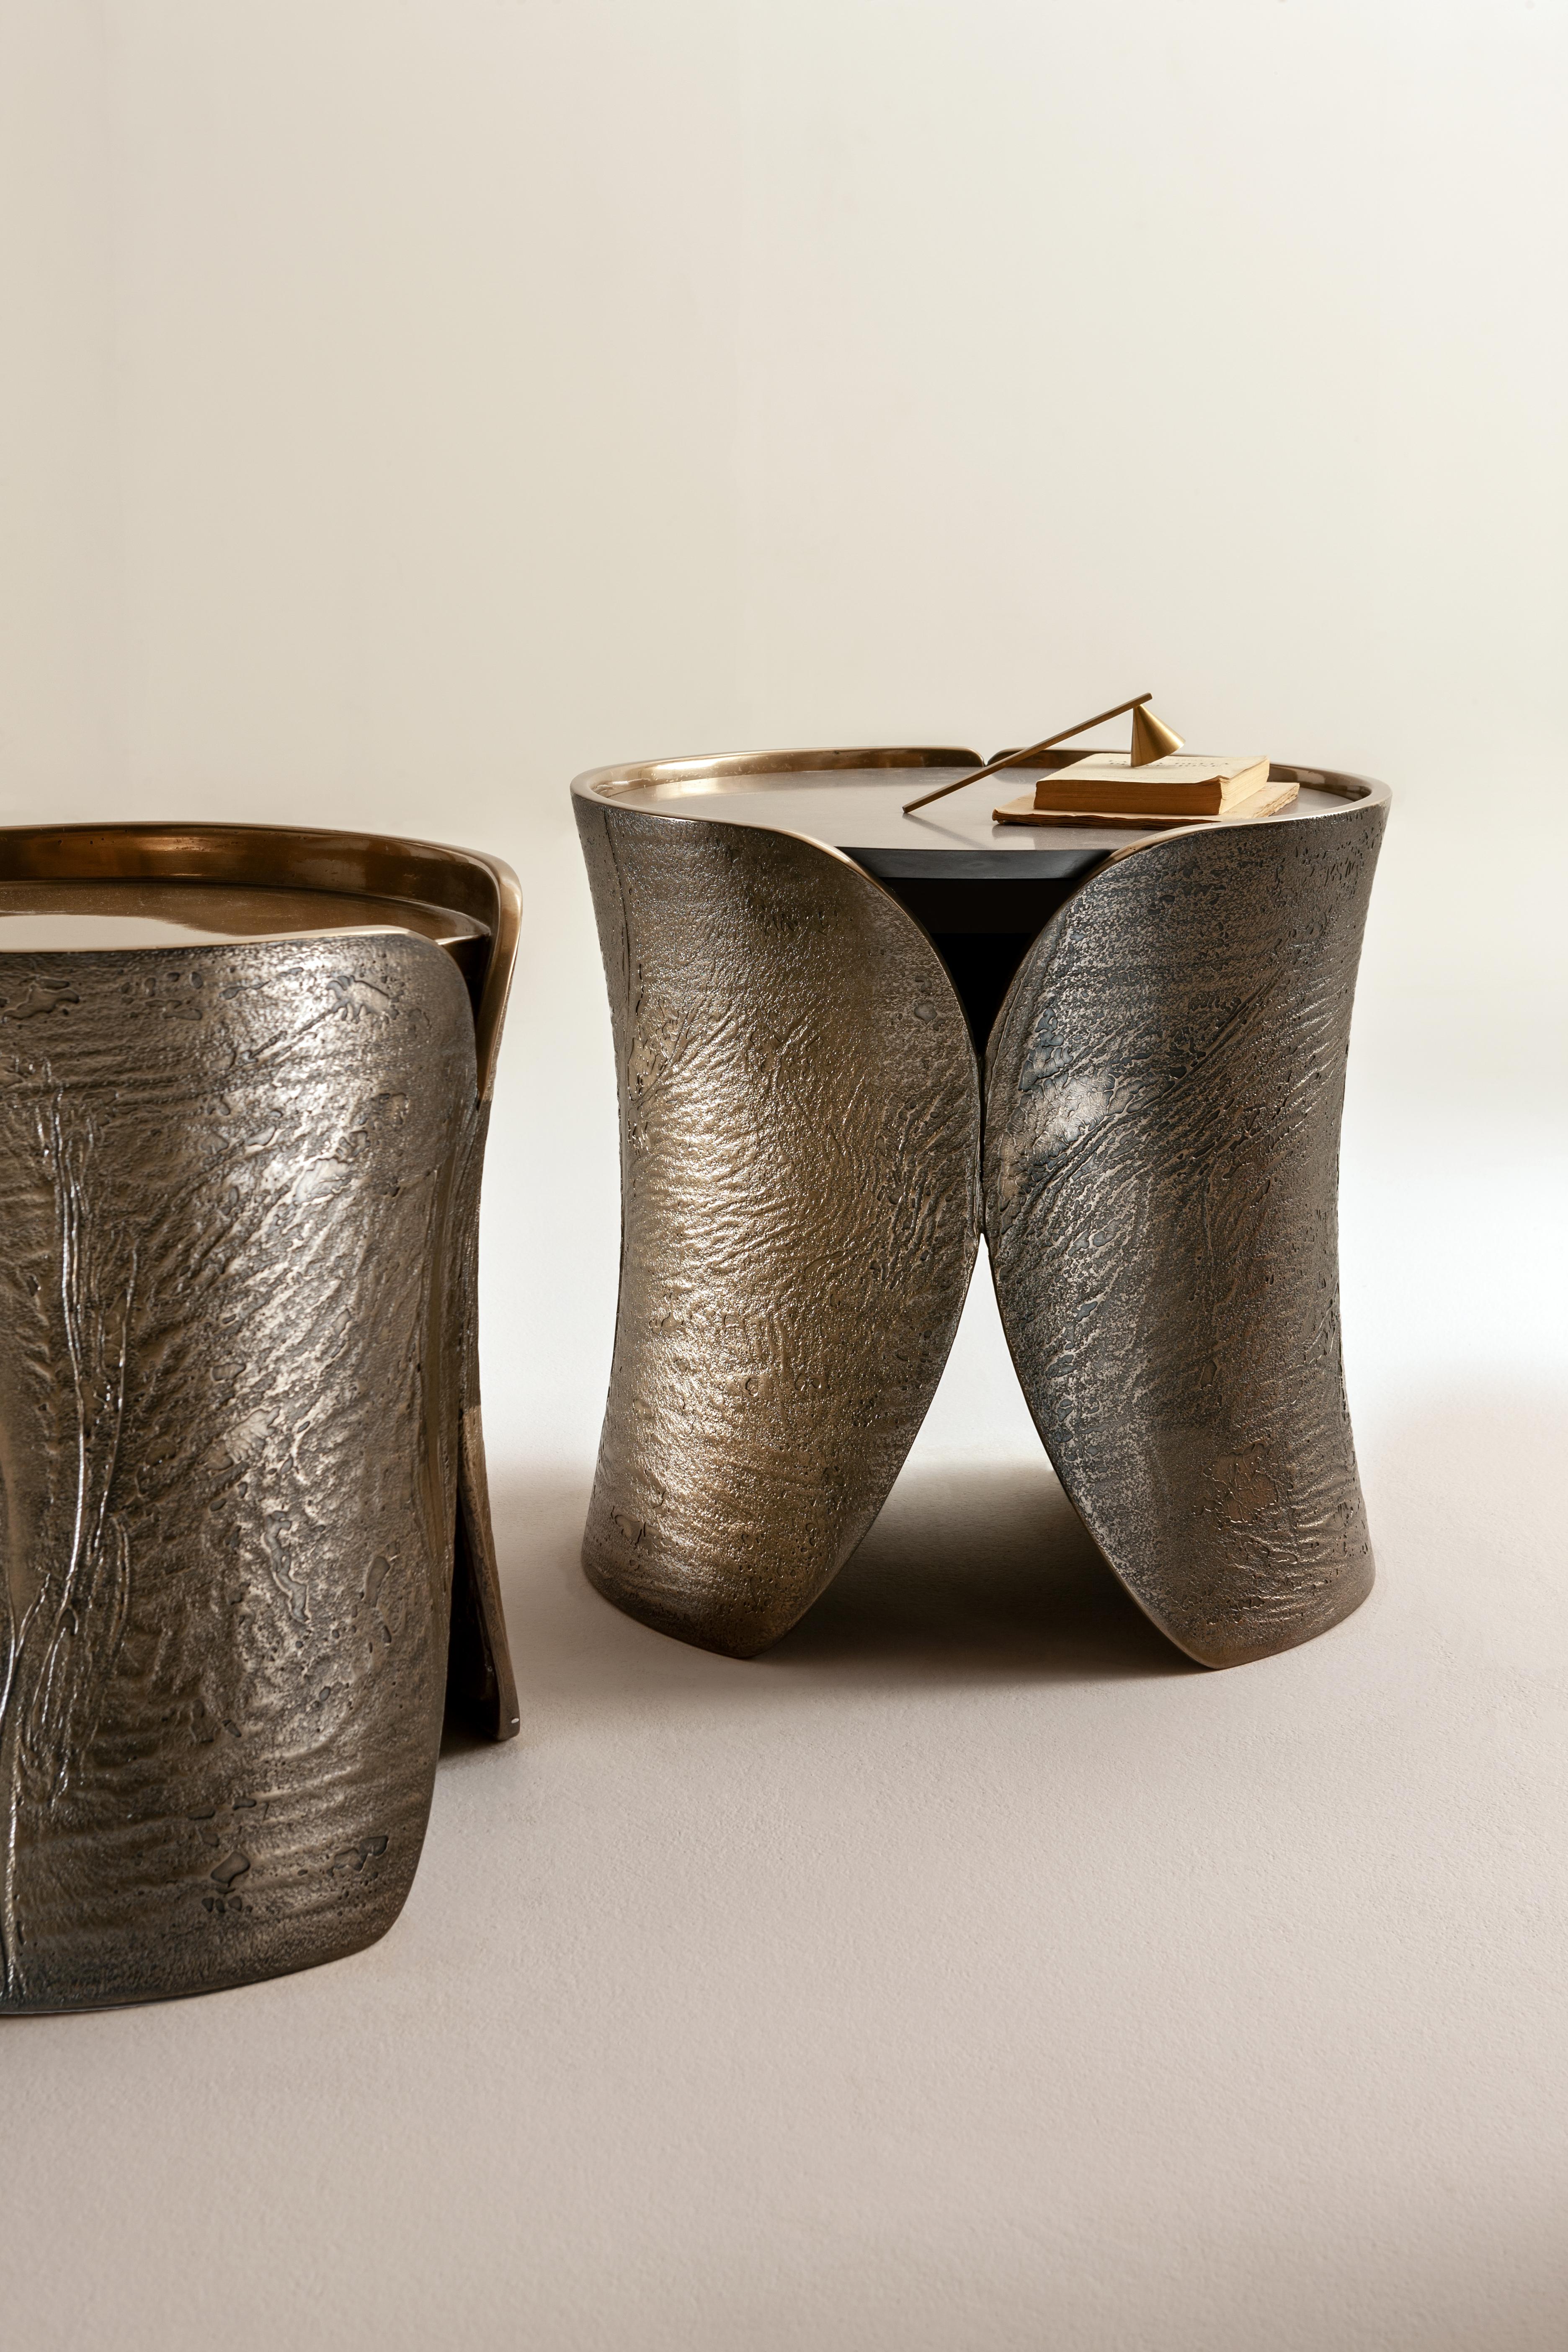 Table basse haute ronde avec structure en hyper bois recouverte de bronze métal liquide avec texture 